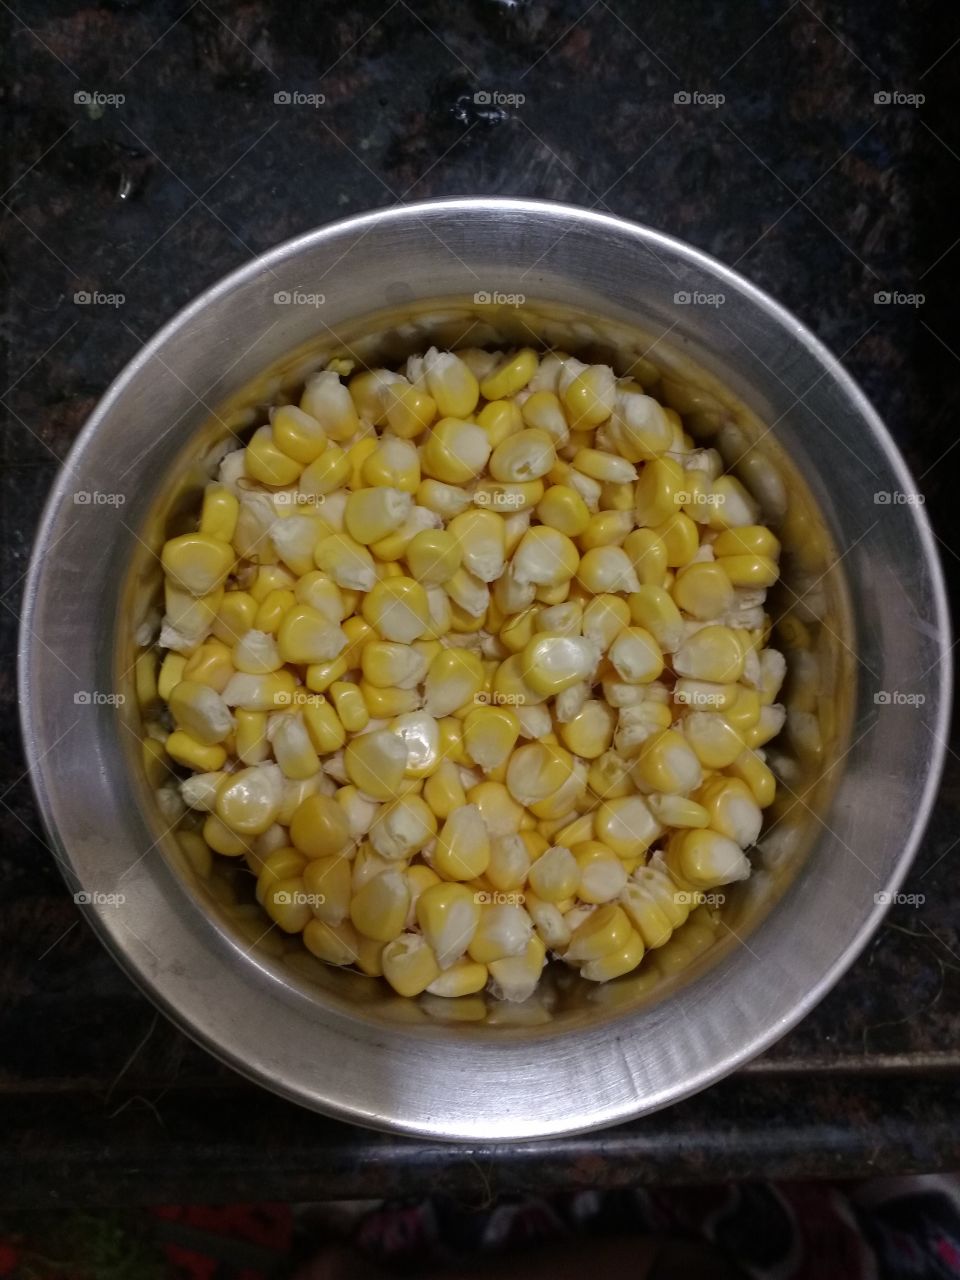 Corns in a bowl.